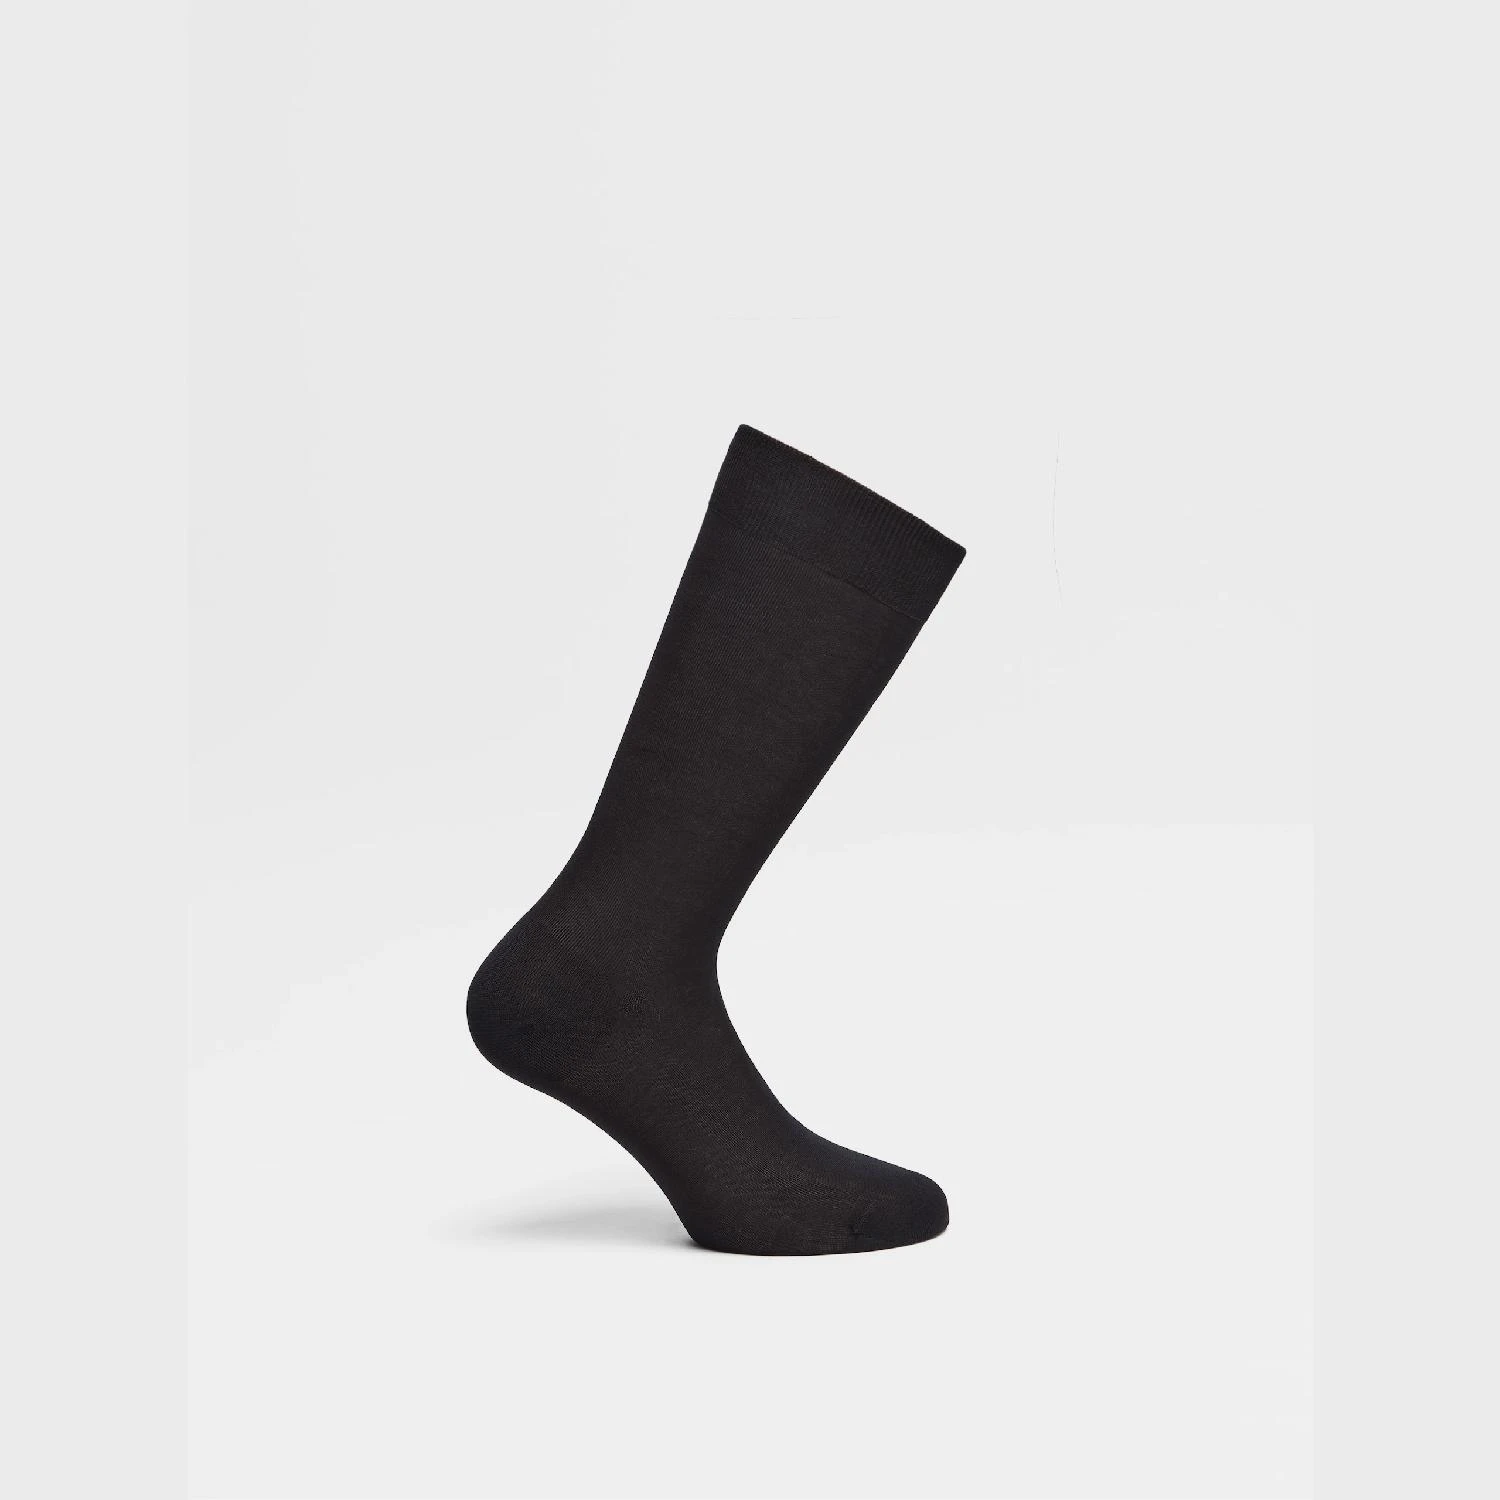 包邮包税【预售7天发货】 ZEGNA杰尼亚 23秋冬 男士 袜子 Black Cotton Socks N4V40-012-001 商品